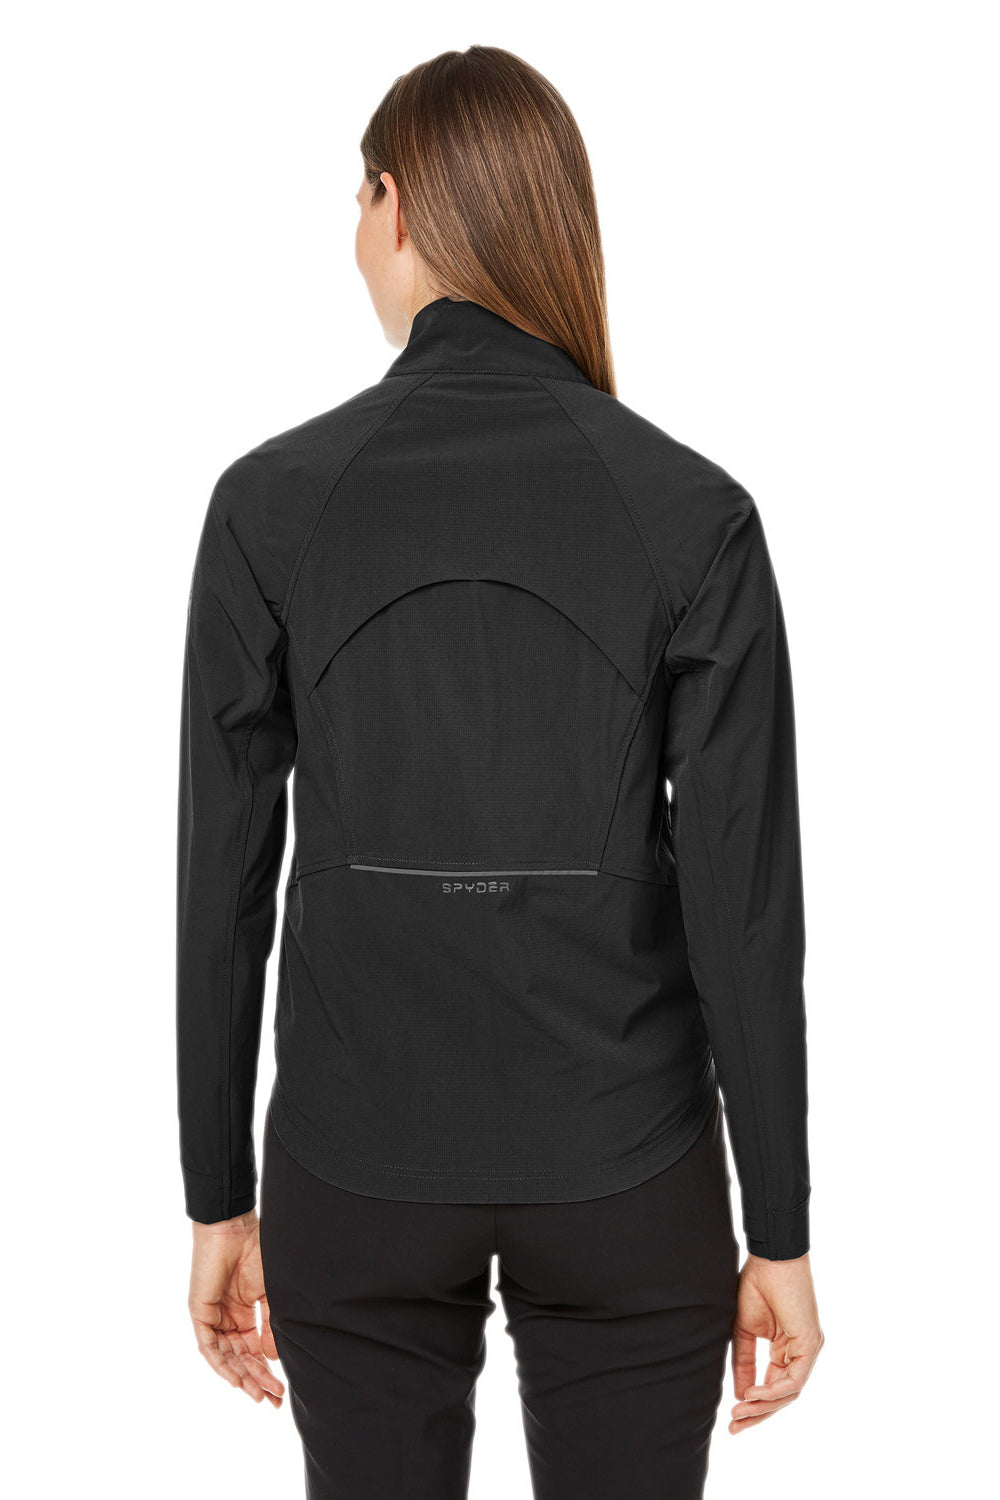 Spyder S17919 Womens Glydelite Full Zip Jacket Black Back